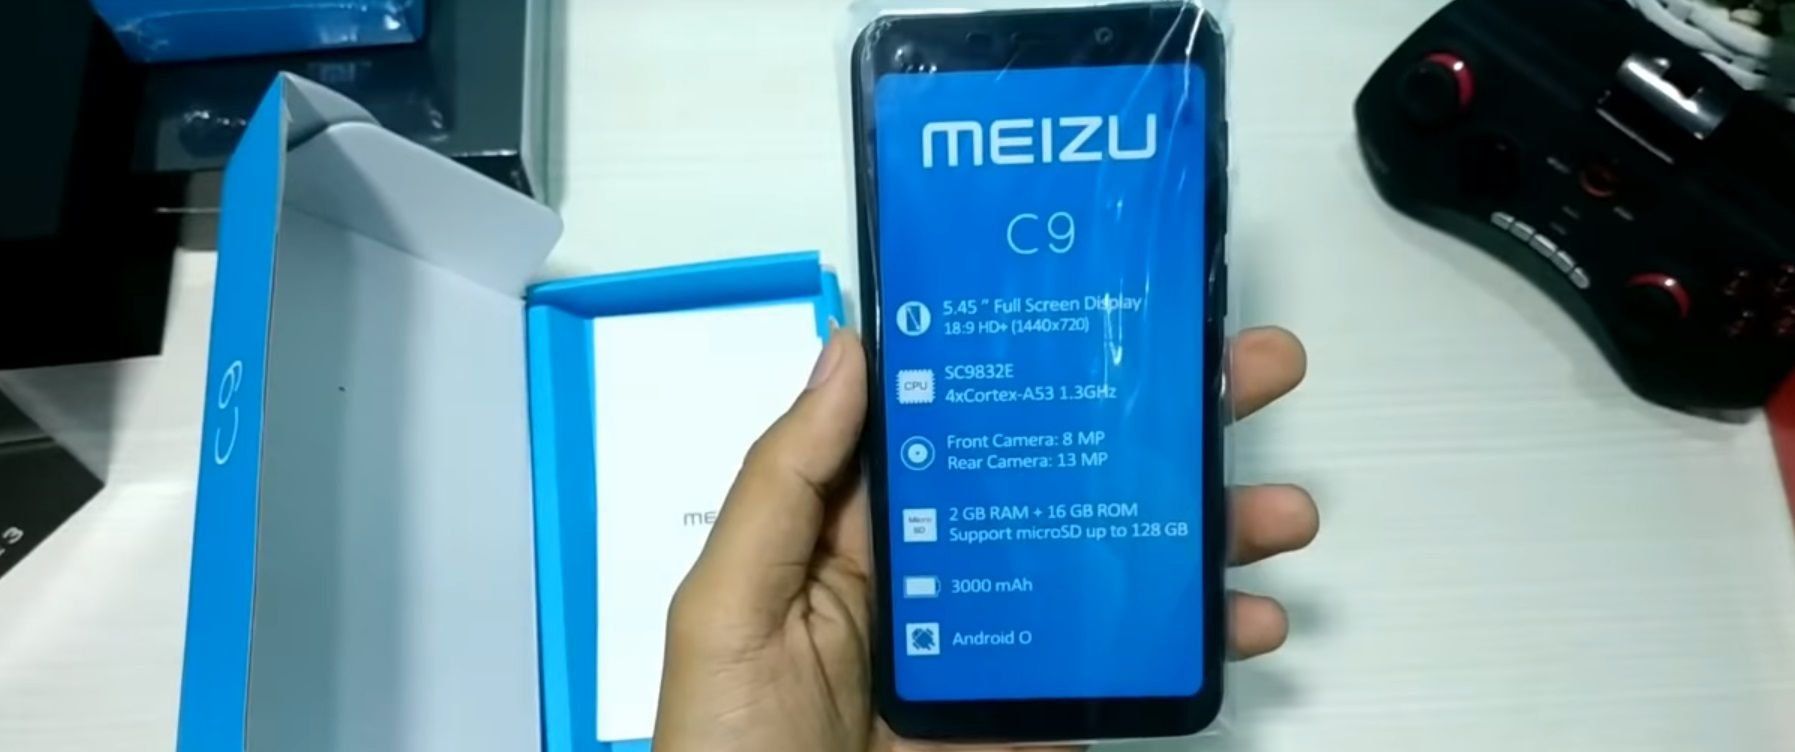 סמארטפונים Meizu C9 ו- C9 Pro - יתרונות וחסרונות